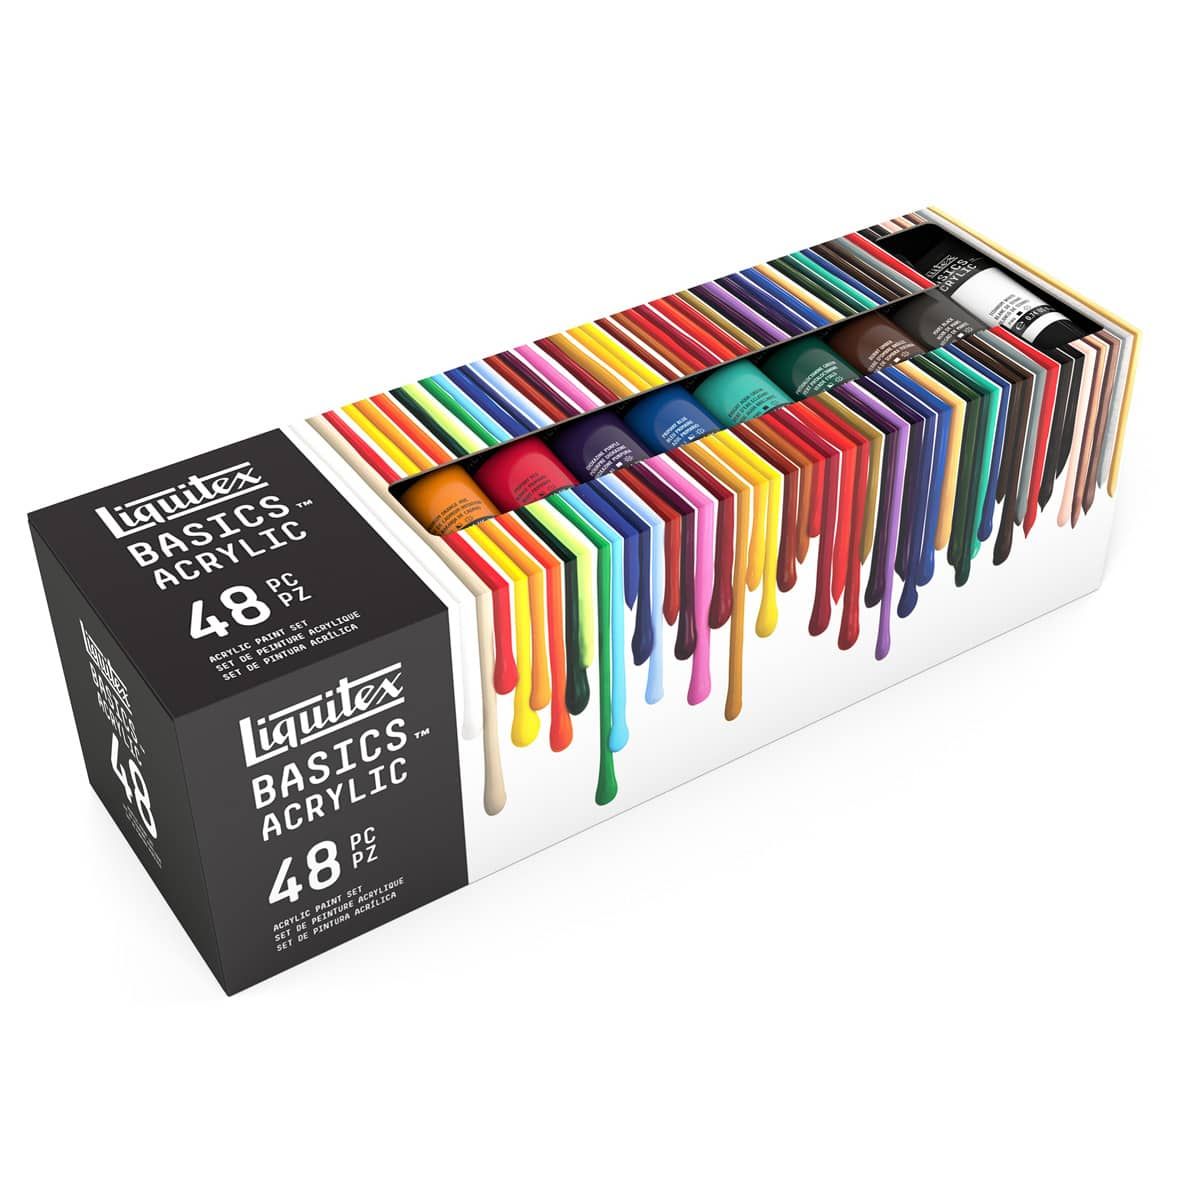 Basics Acrylic Primary Colors Set, 6x22ml (Liquitex Basics) – Alabama Art  Supply